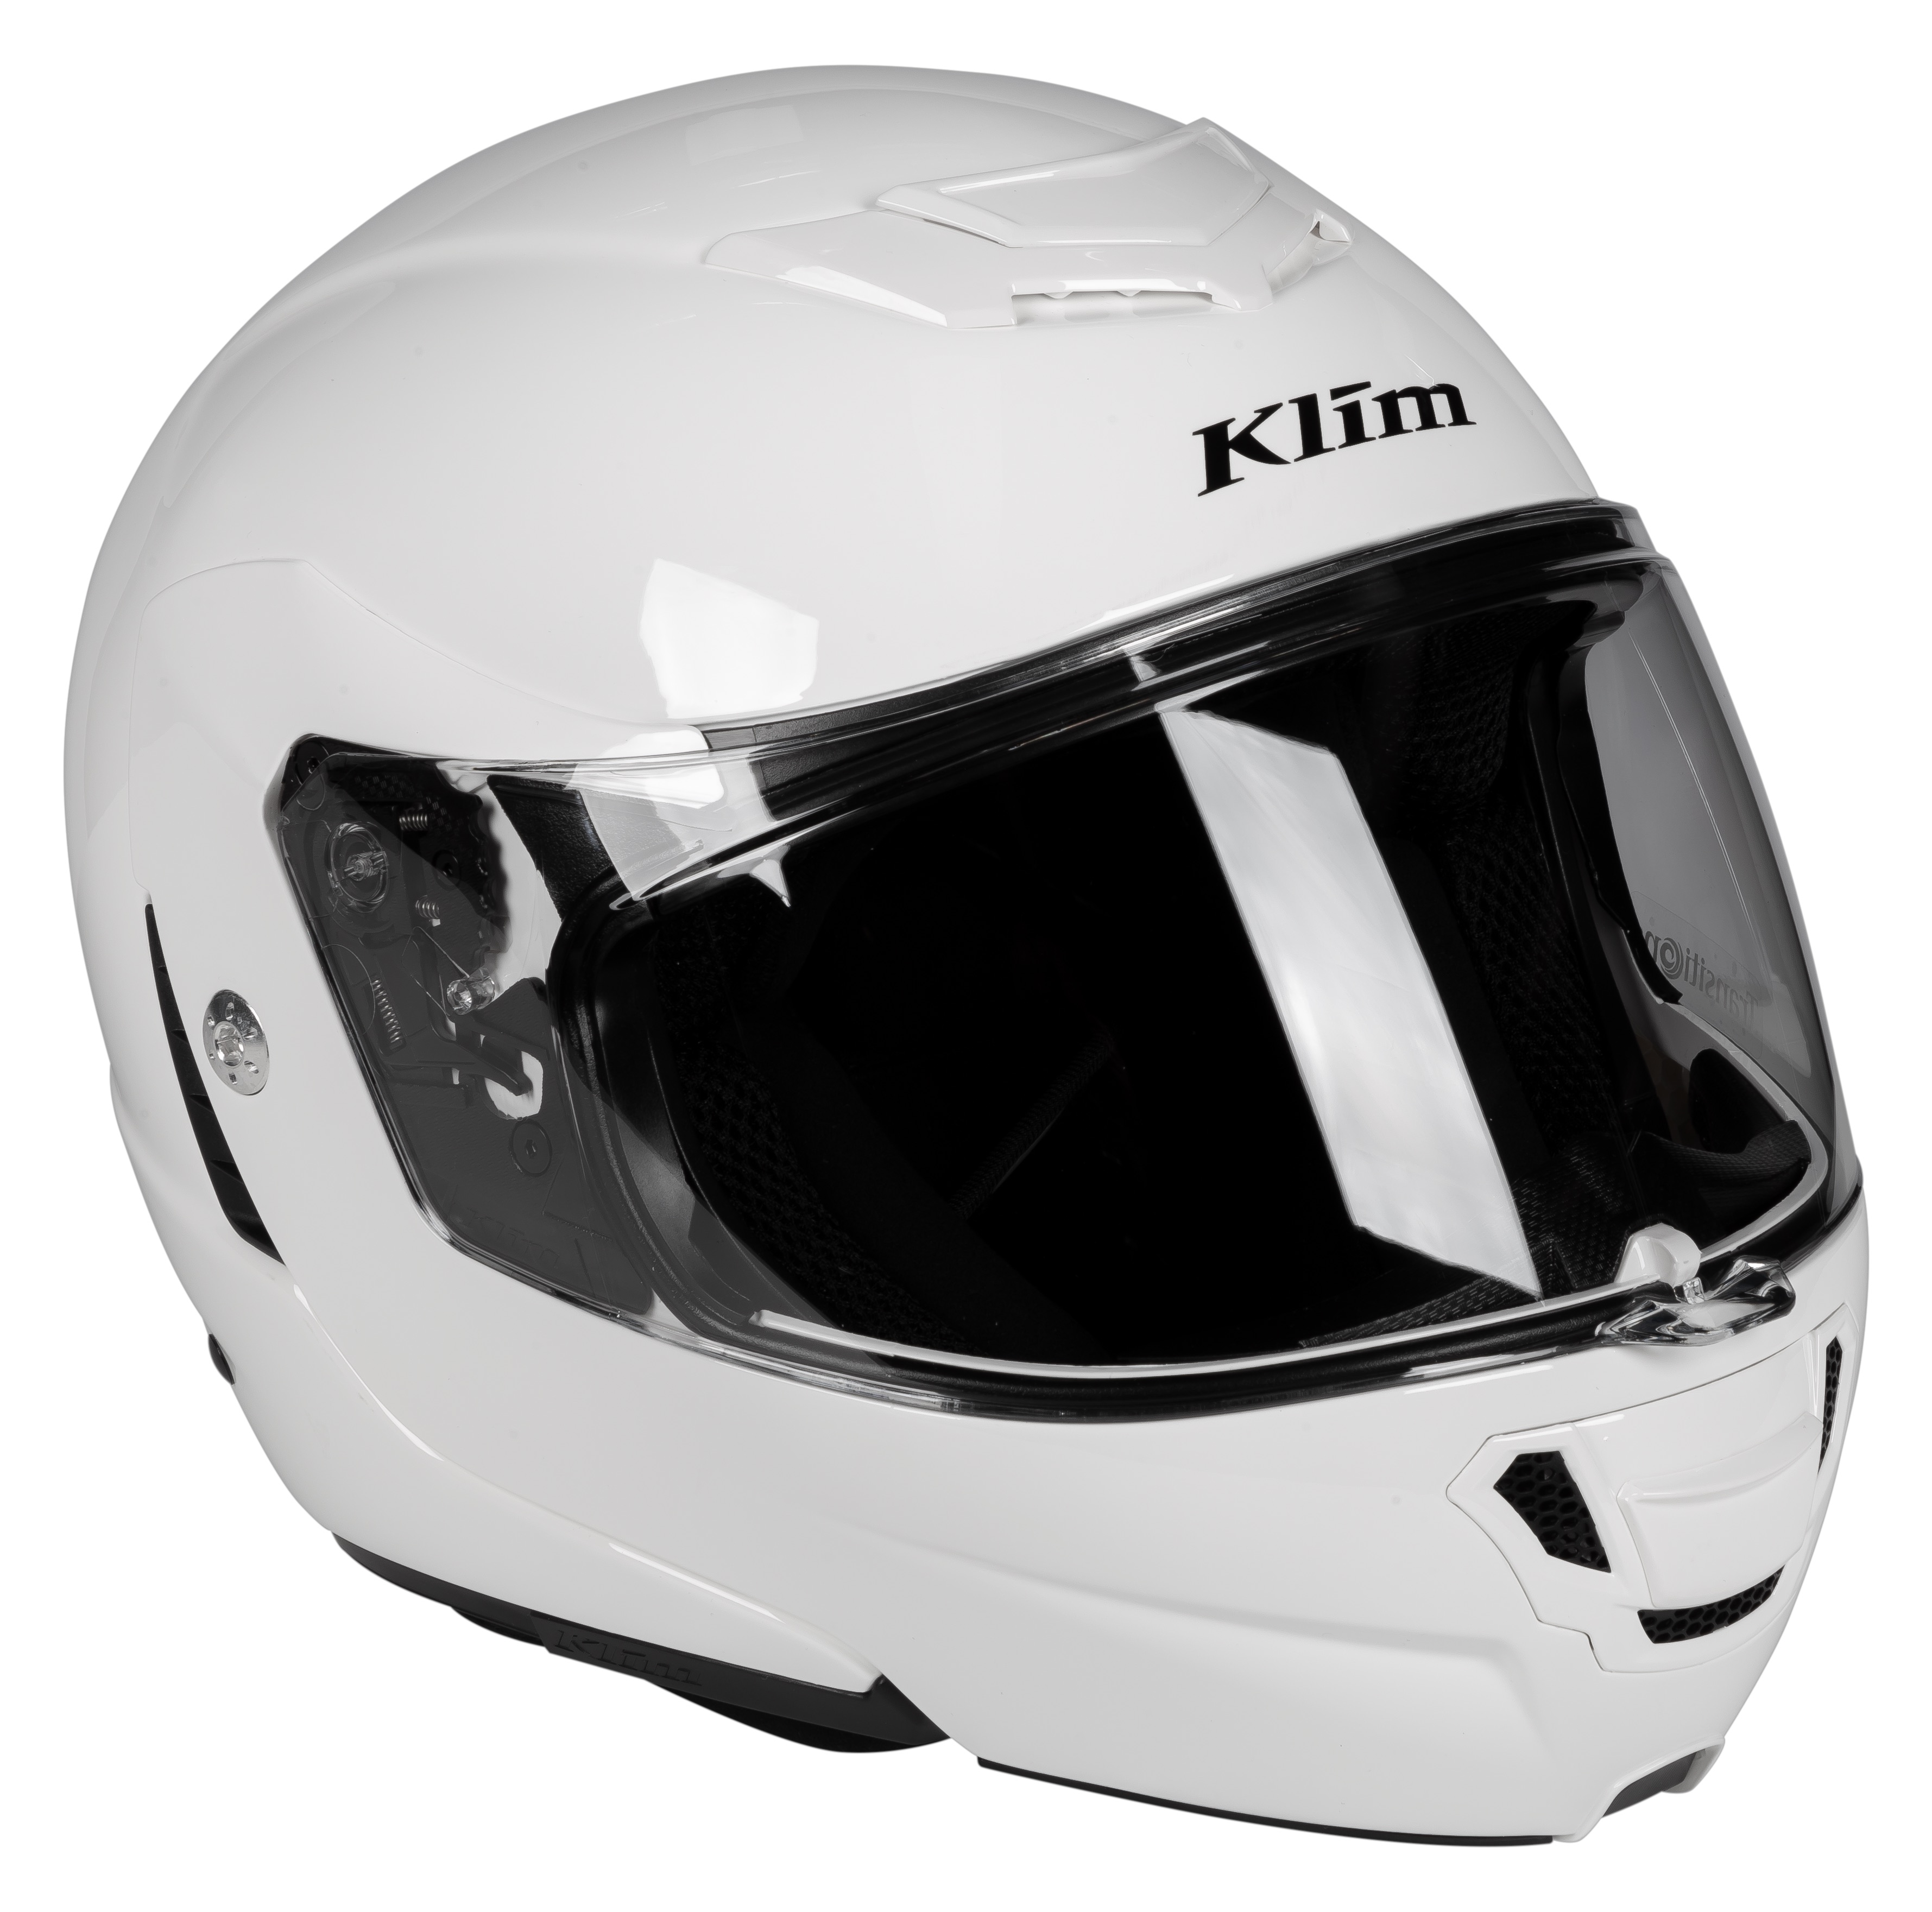 KLIM Motorradbekleidung: Klapphelm voll hochwertiger Technologie 